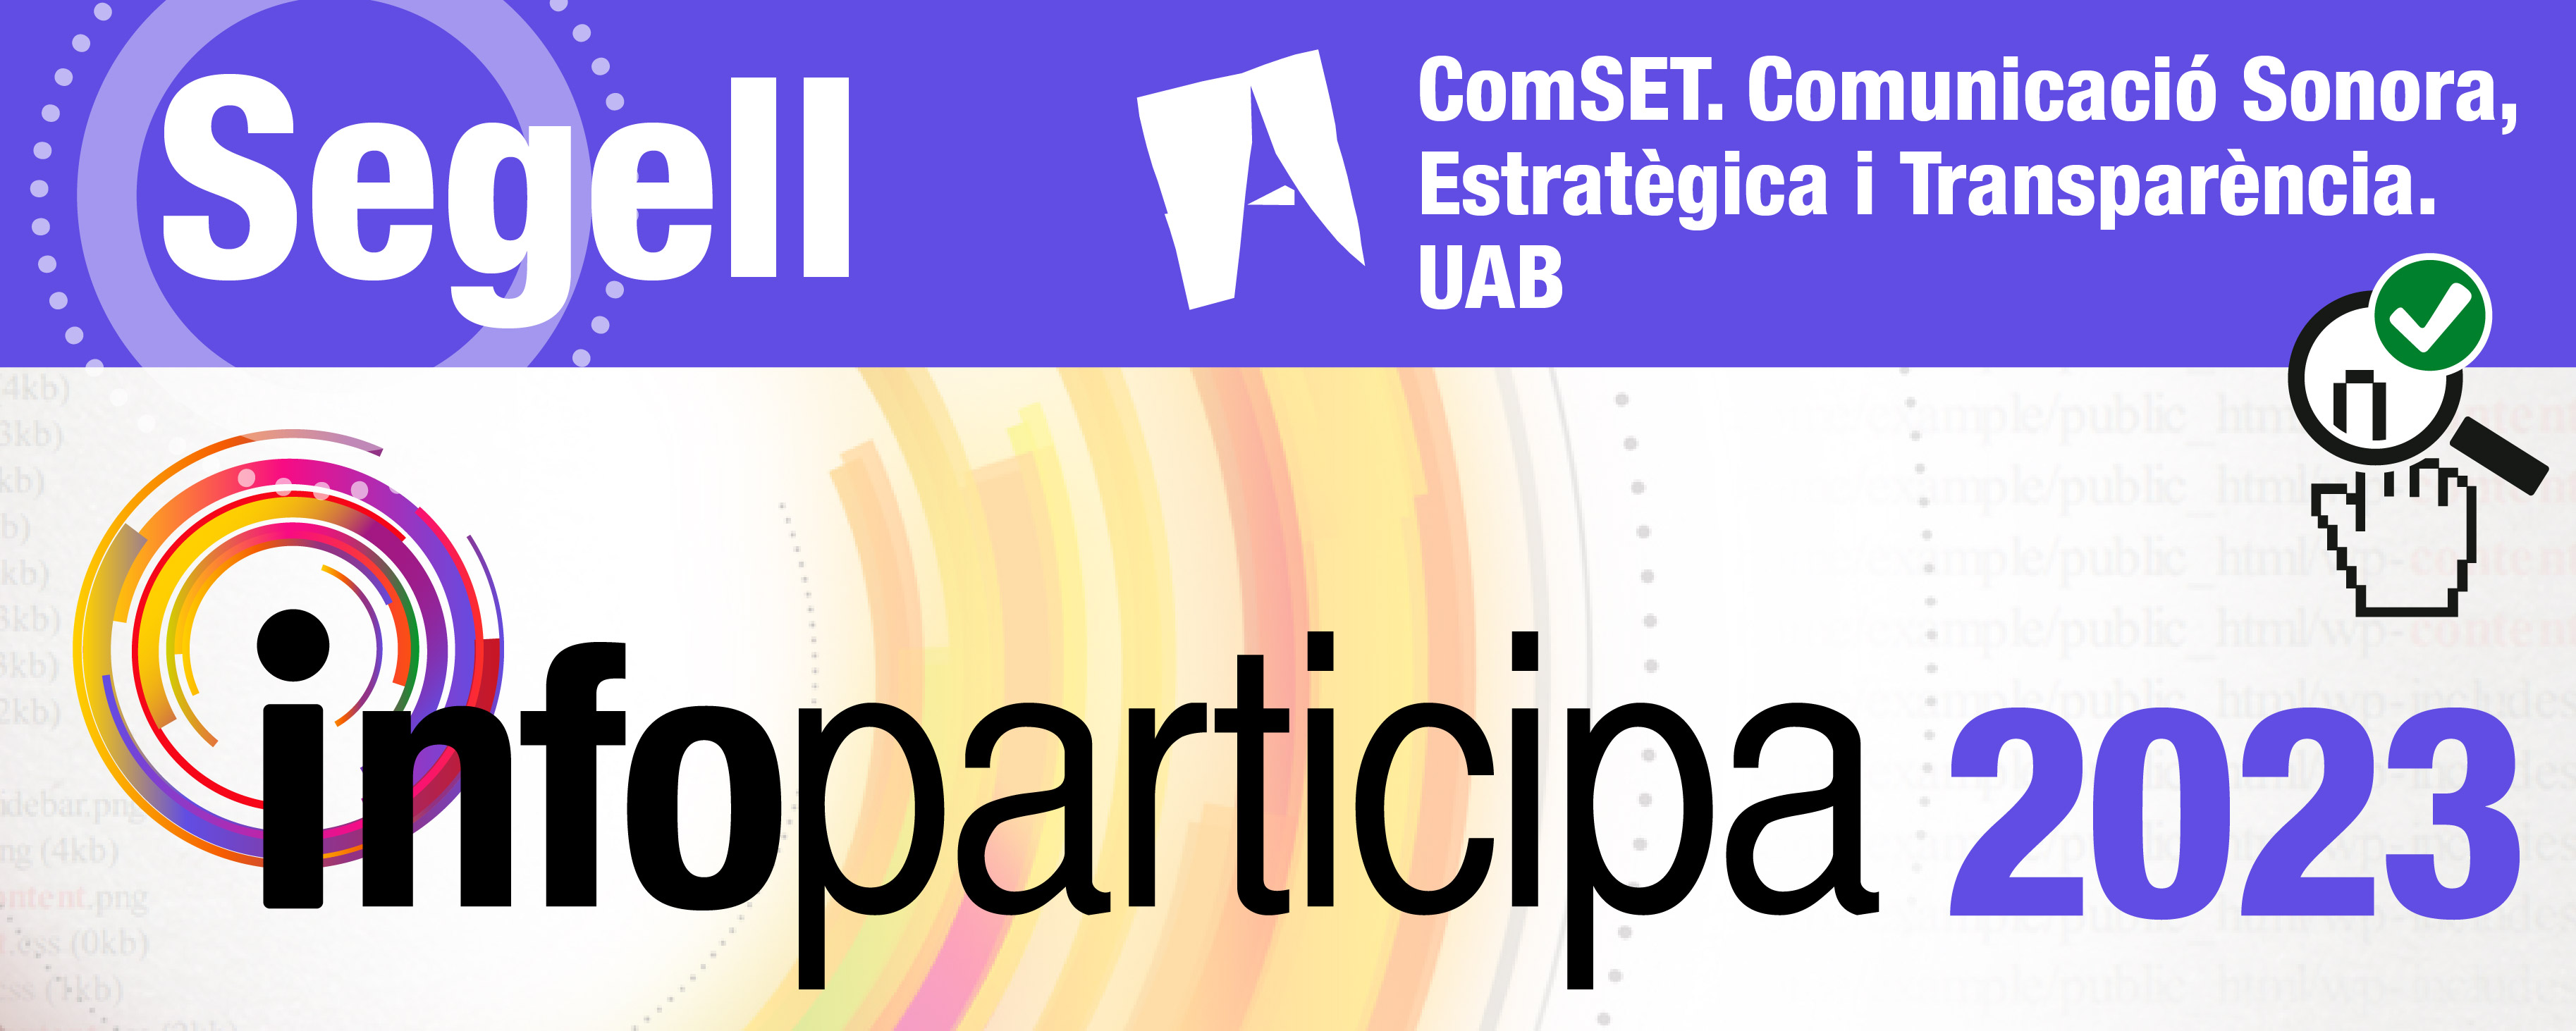 Arenys de Munt és un dels 17 ajuntaments de Catalunya que han rebut el segell Infoparticipa 2023 amb el 100% d'objectius i indicadors assolits